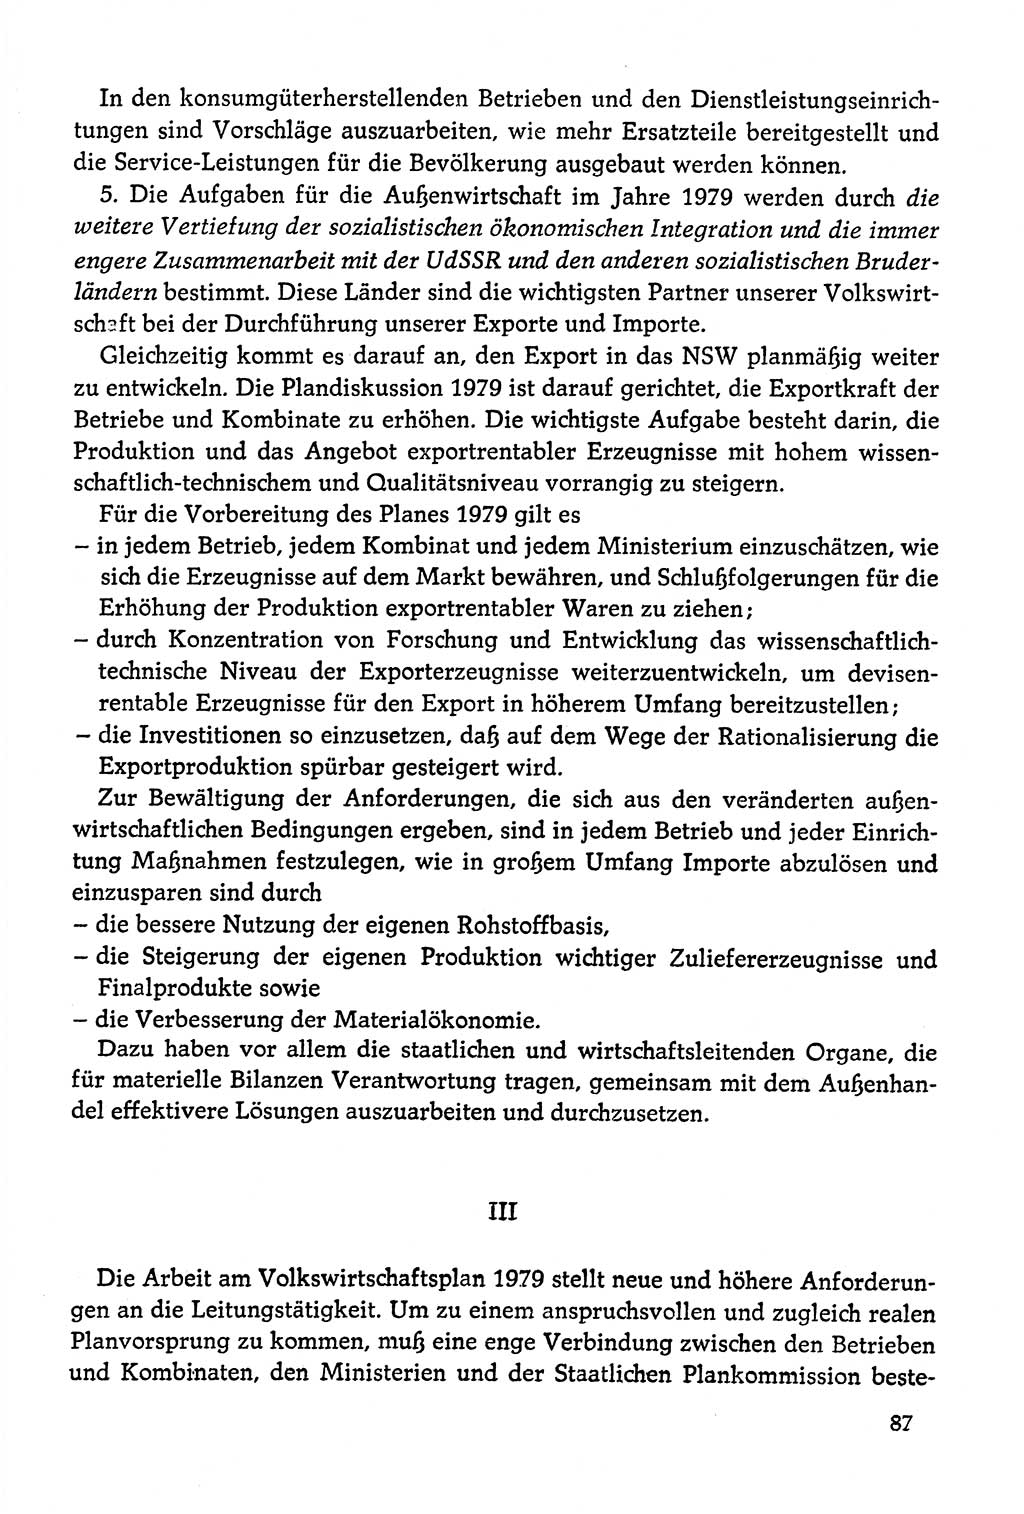 Dokumente der Sozialistischen Einheitspartei Deutschlands (SED) [Deutsche Demokratische Republik (DDR)] 1978-1979, Seite 87 (Dok. SED DDR 1978-1979, S. 87)